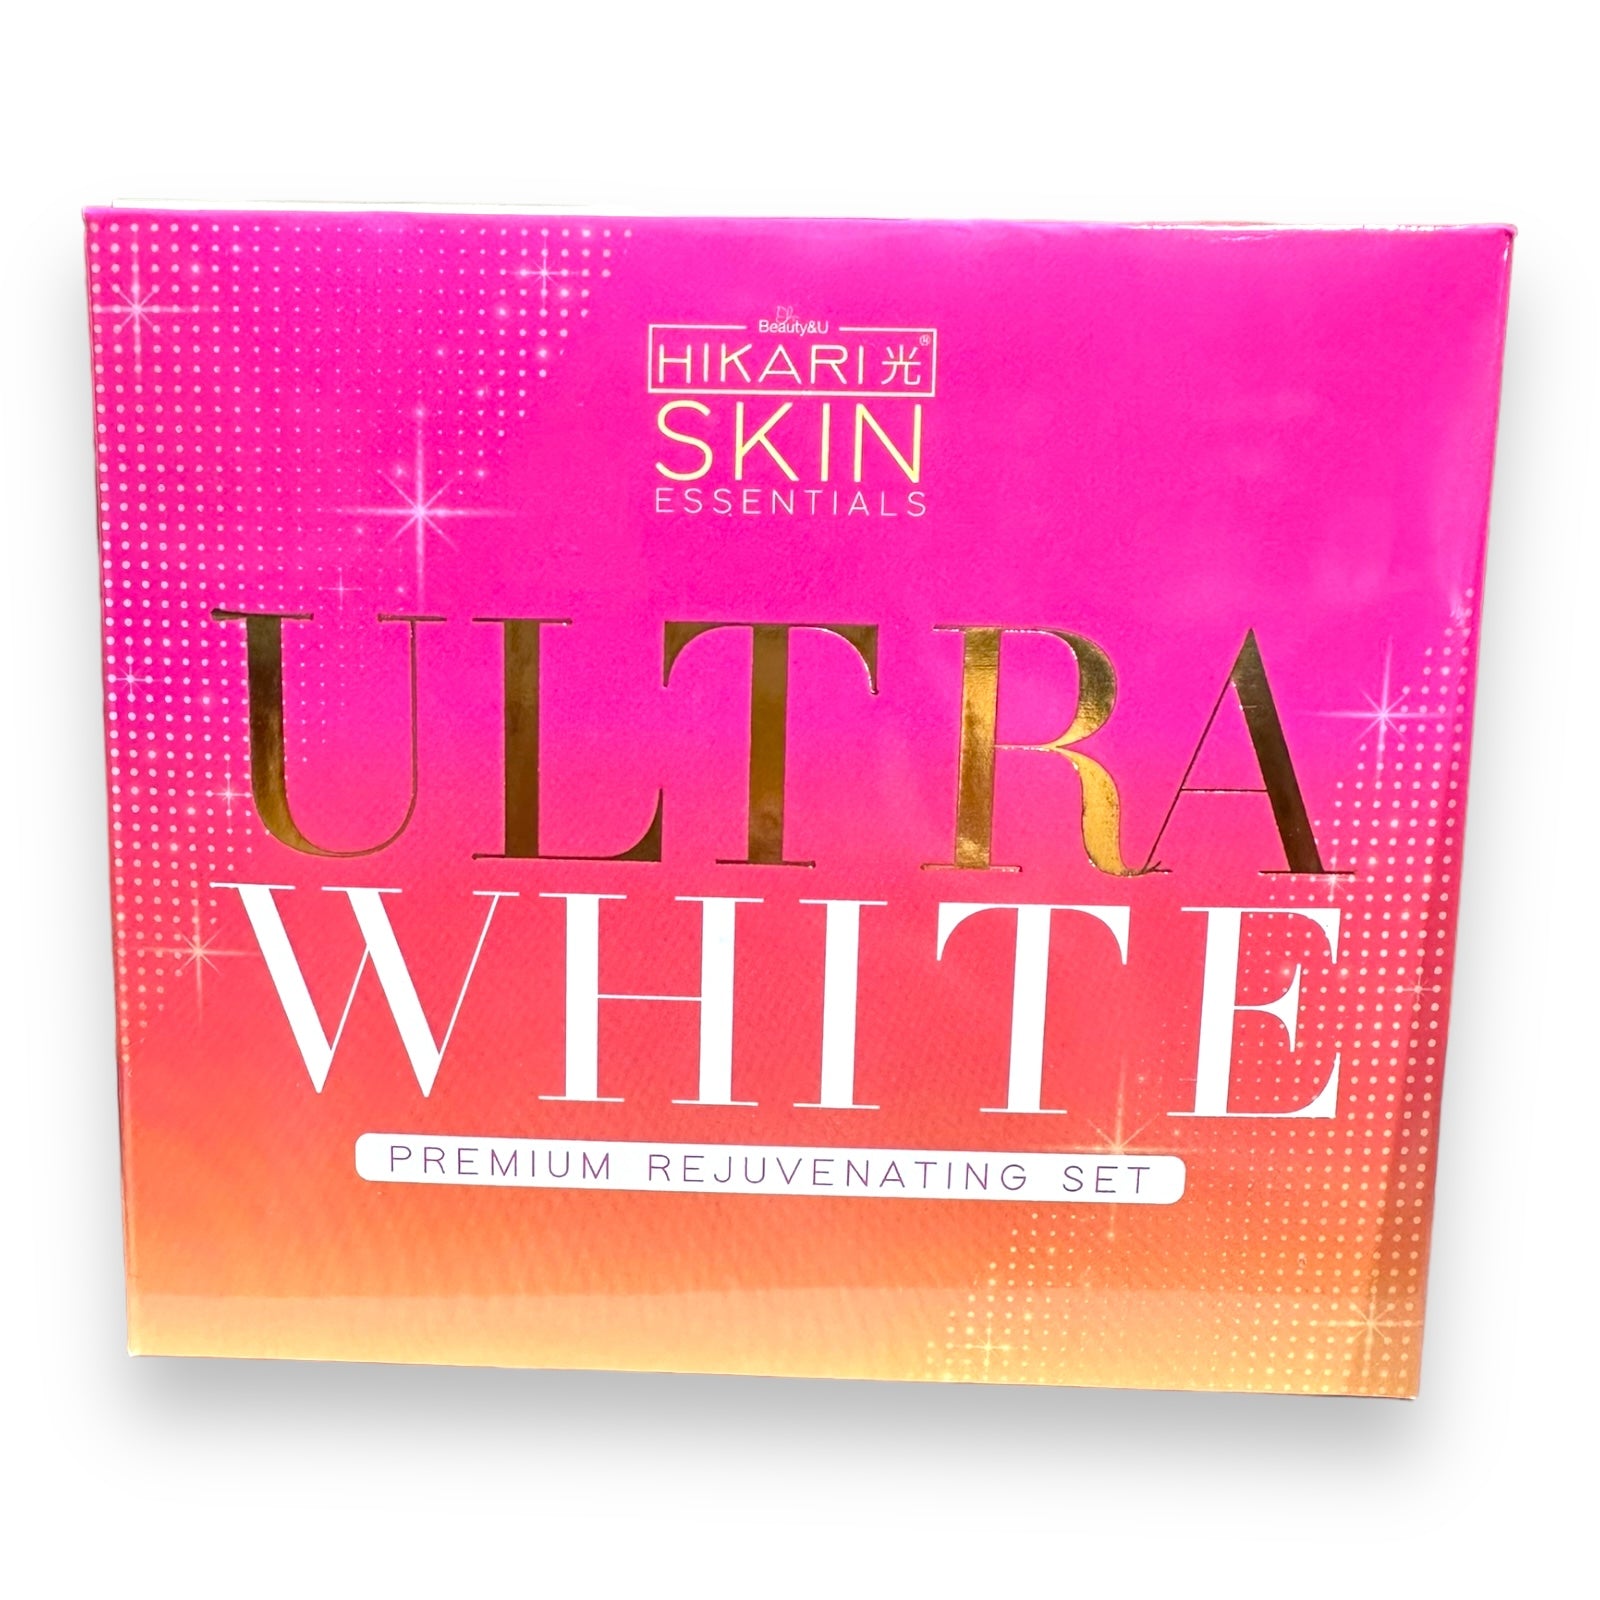 Hikari Skin Essentials - Ultra White Premium Rejuvenating Set